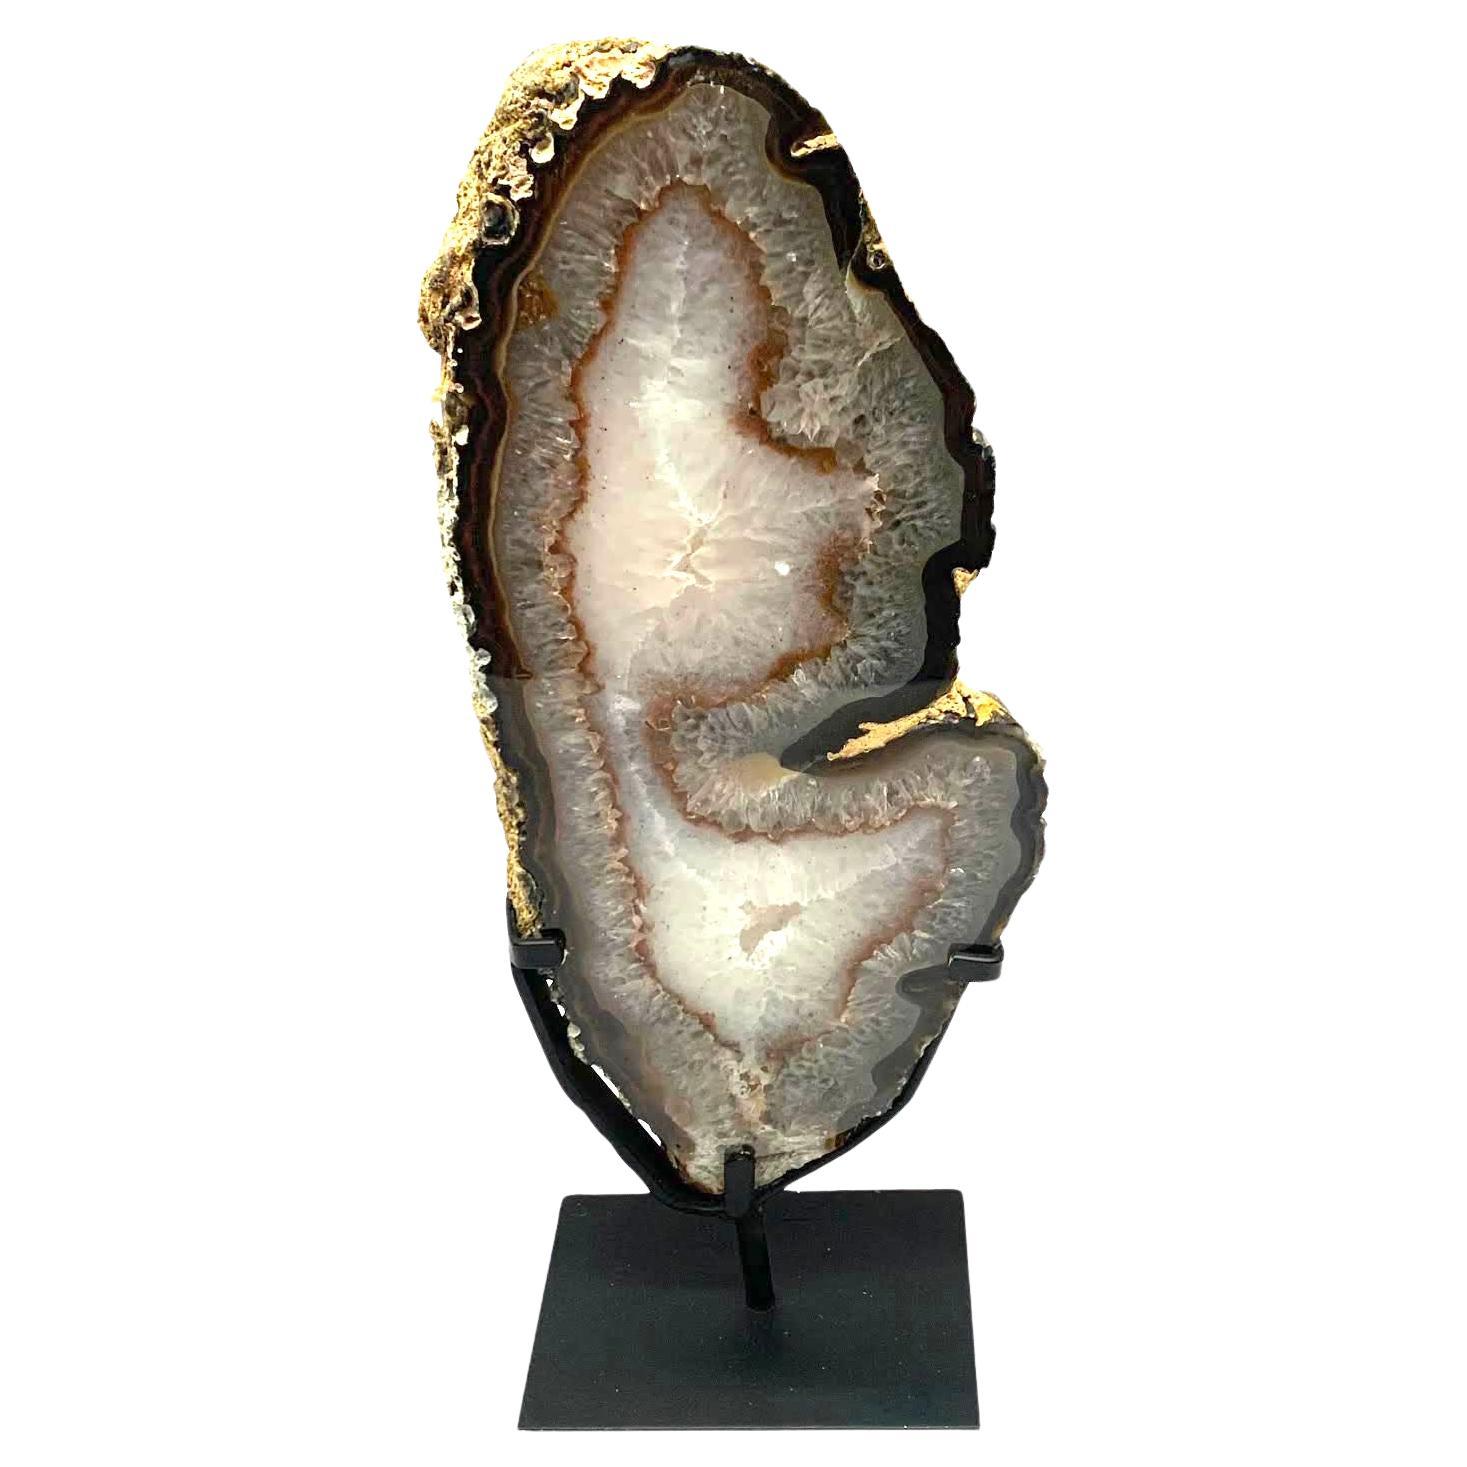 Weiß, Taupe, Rost Achat Geode Skulptur auf Stand, Brasilien, Prähistorisch